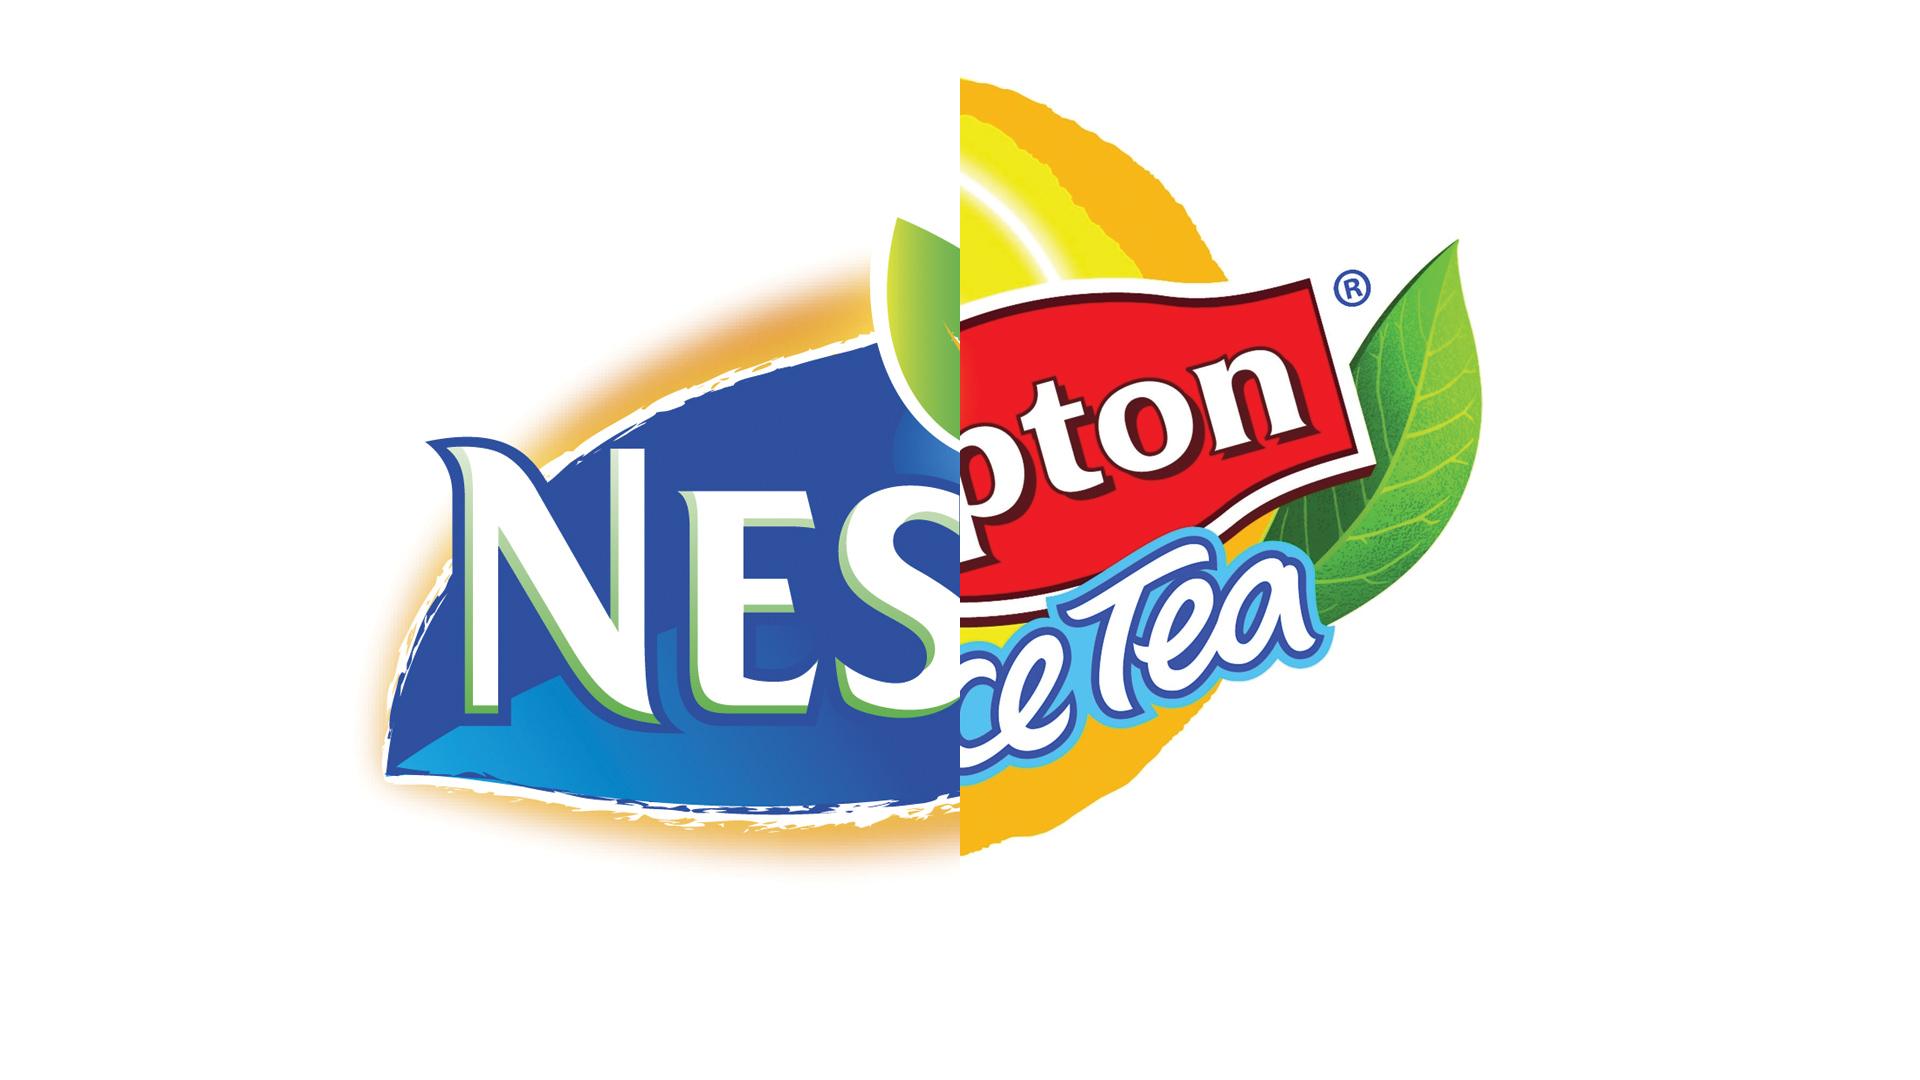 Nestea Logo - World Versus vs Lipton Ice Tea